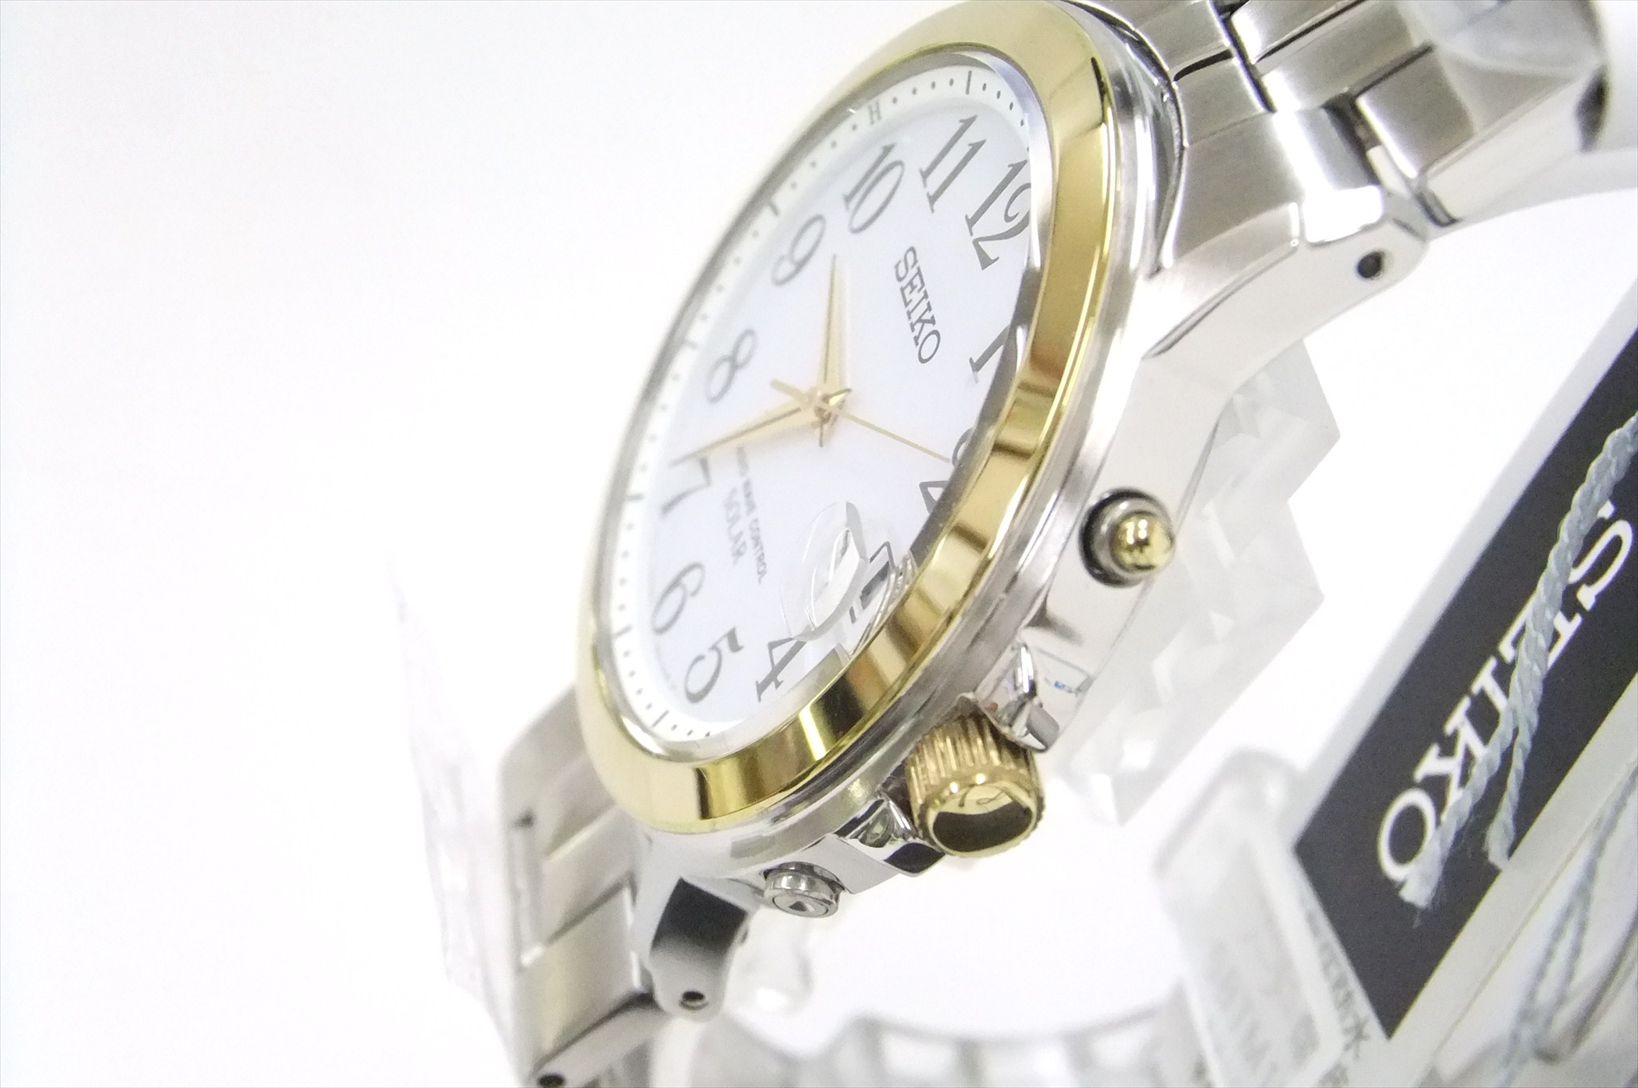 【訳あり・格安】SEIKO SPIRIT セイコー スピリット ソーラー電波 メンズ腕時計 アラビア数字 ゴールドベゼル SBTM164